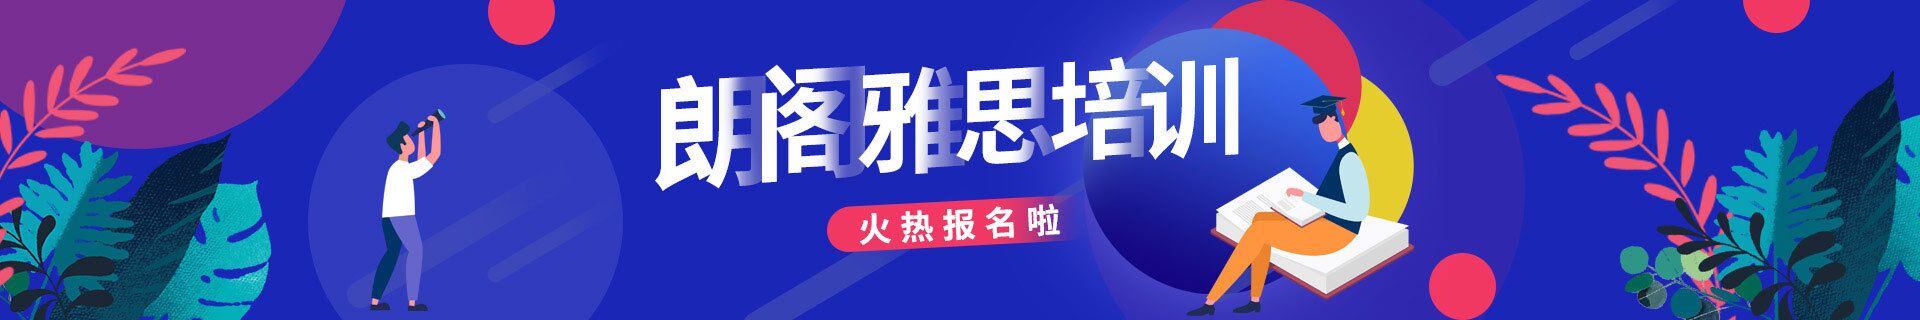 广州白云环球雅思教育培训机构